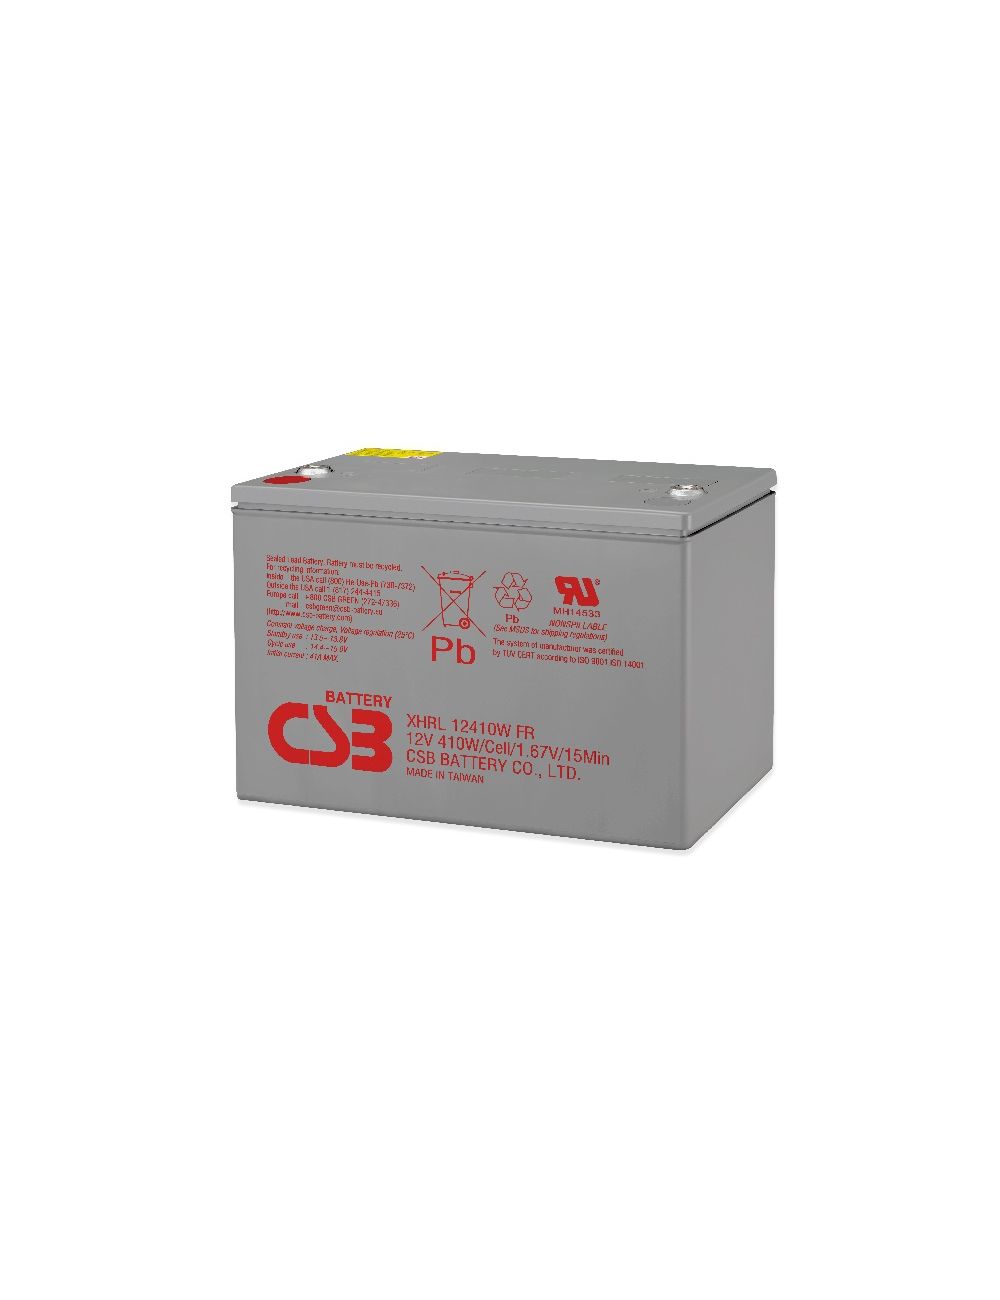 Batería 12V 410W/celda CSB serie XHRL - CSB-XHRL12410W -  -  - 1